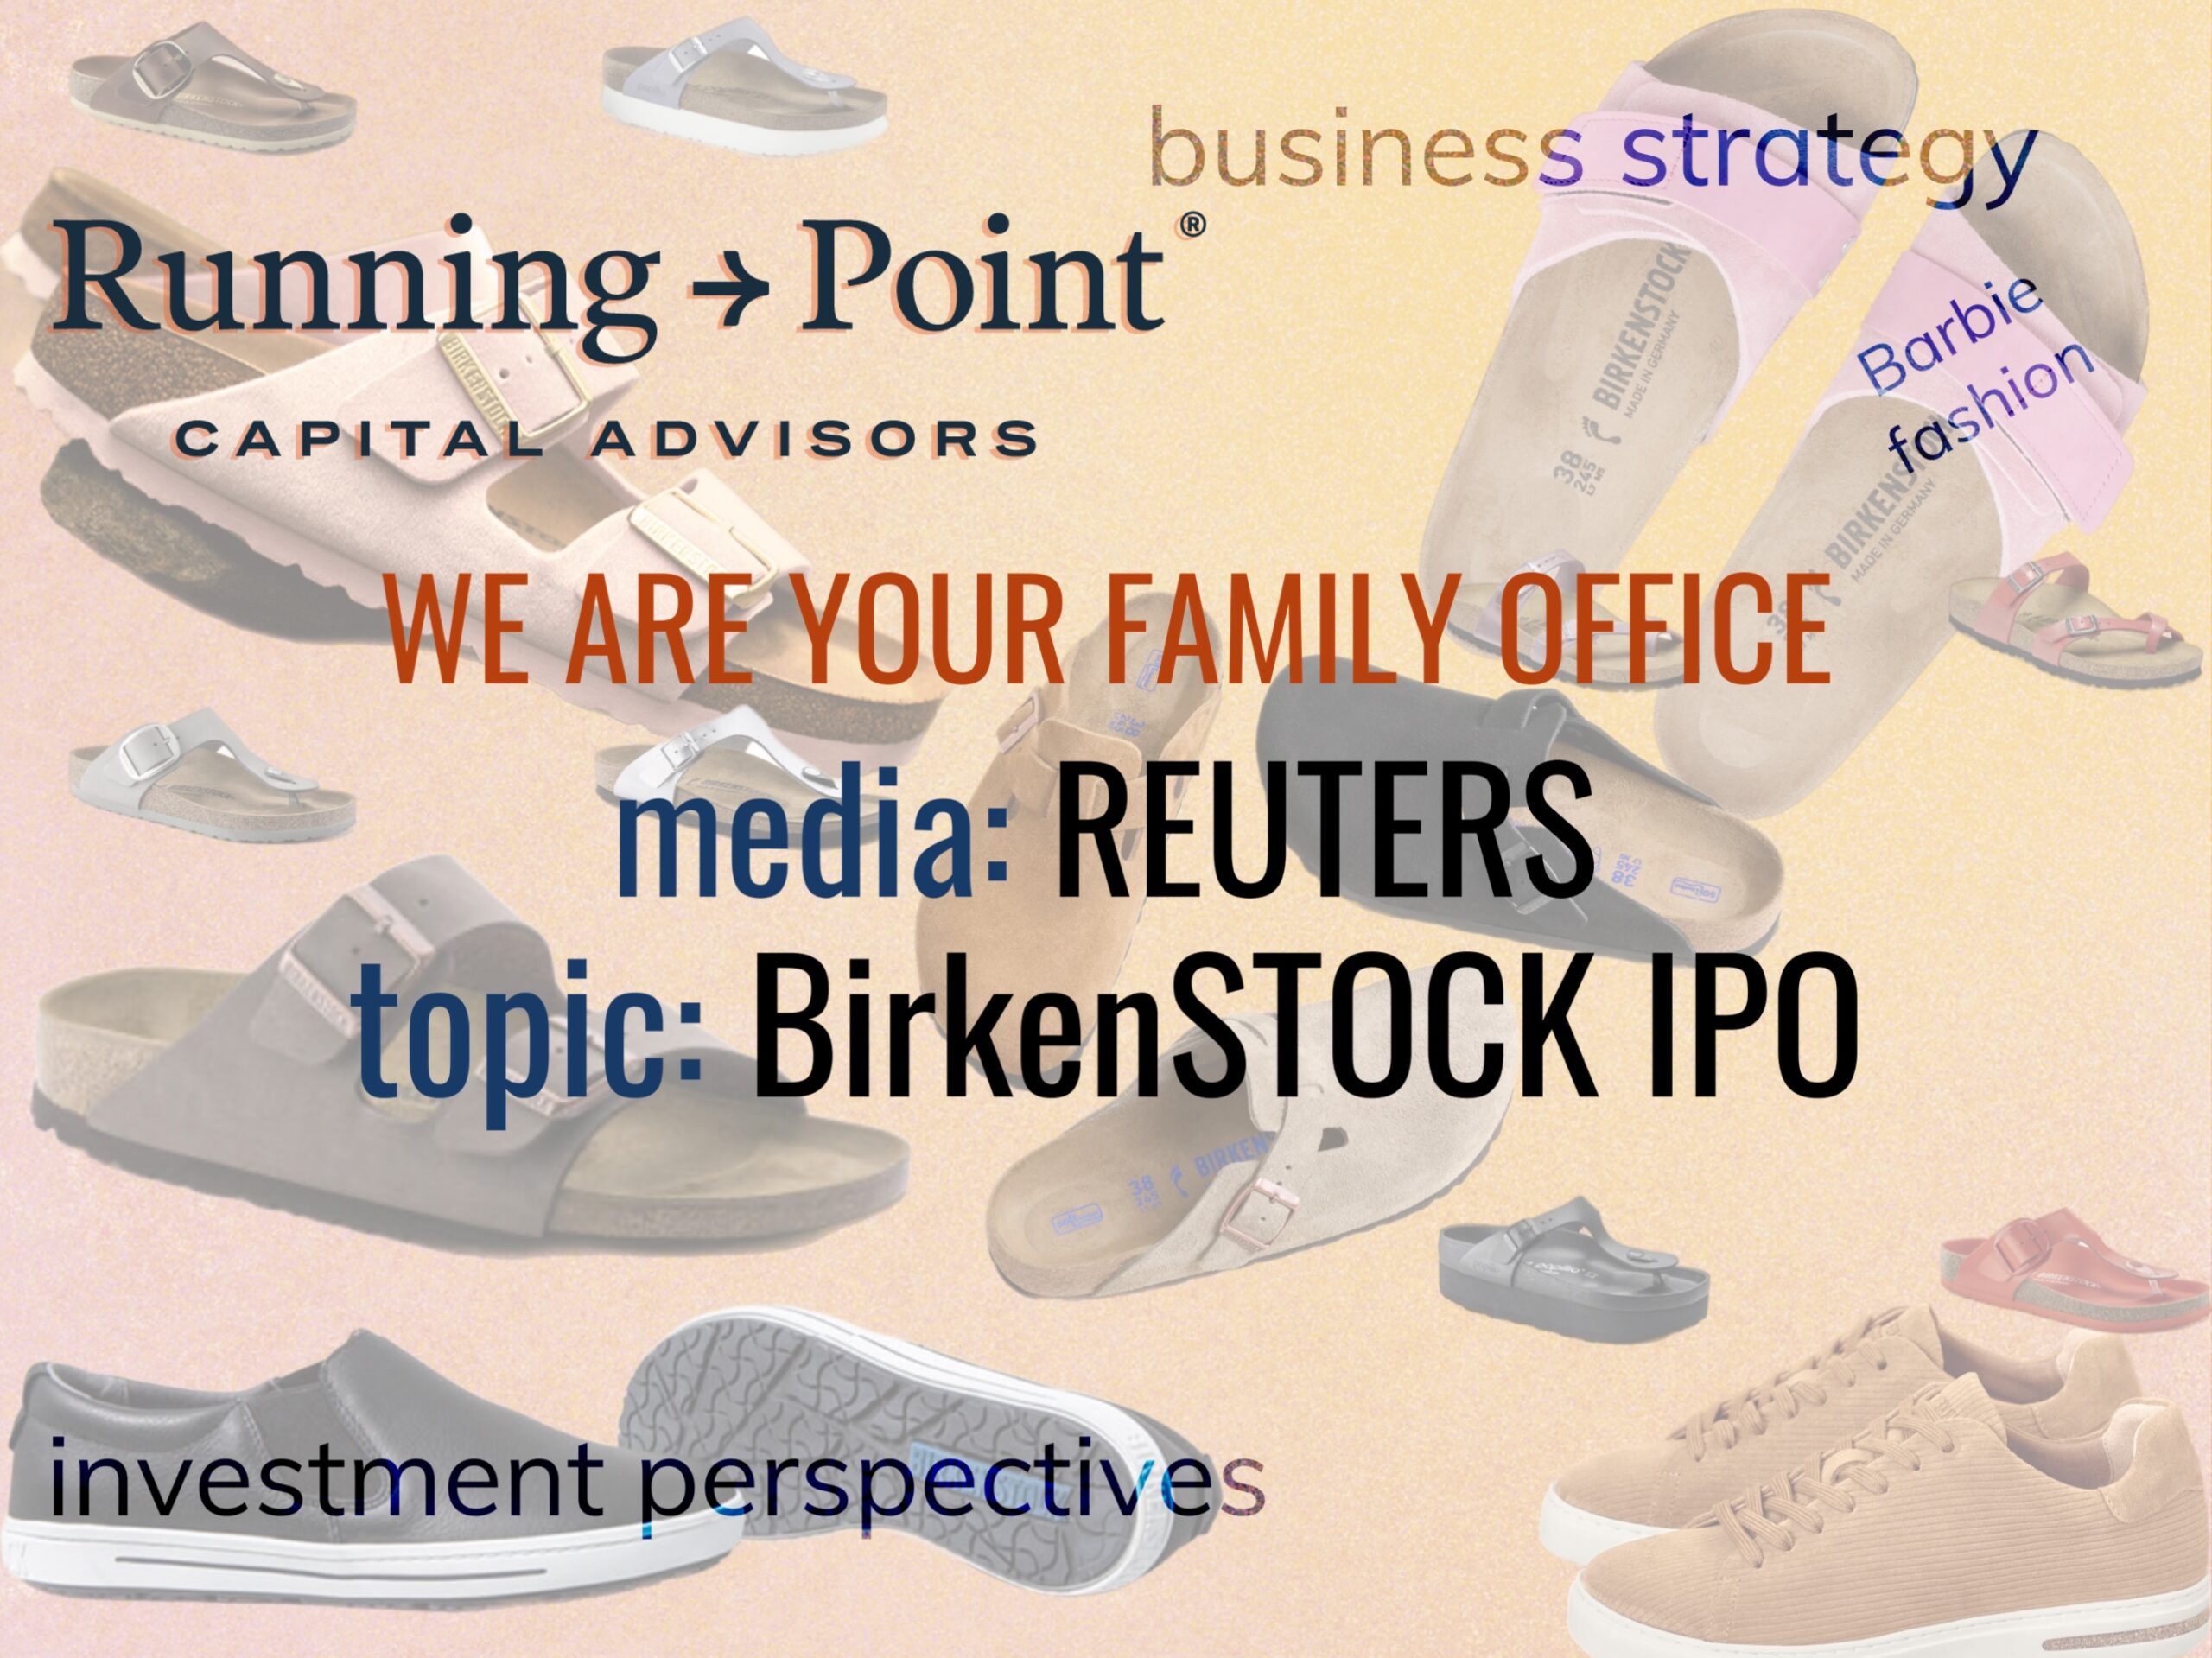 Reuters: BirkenSTOCK IPO